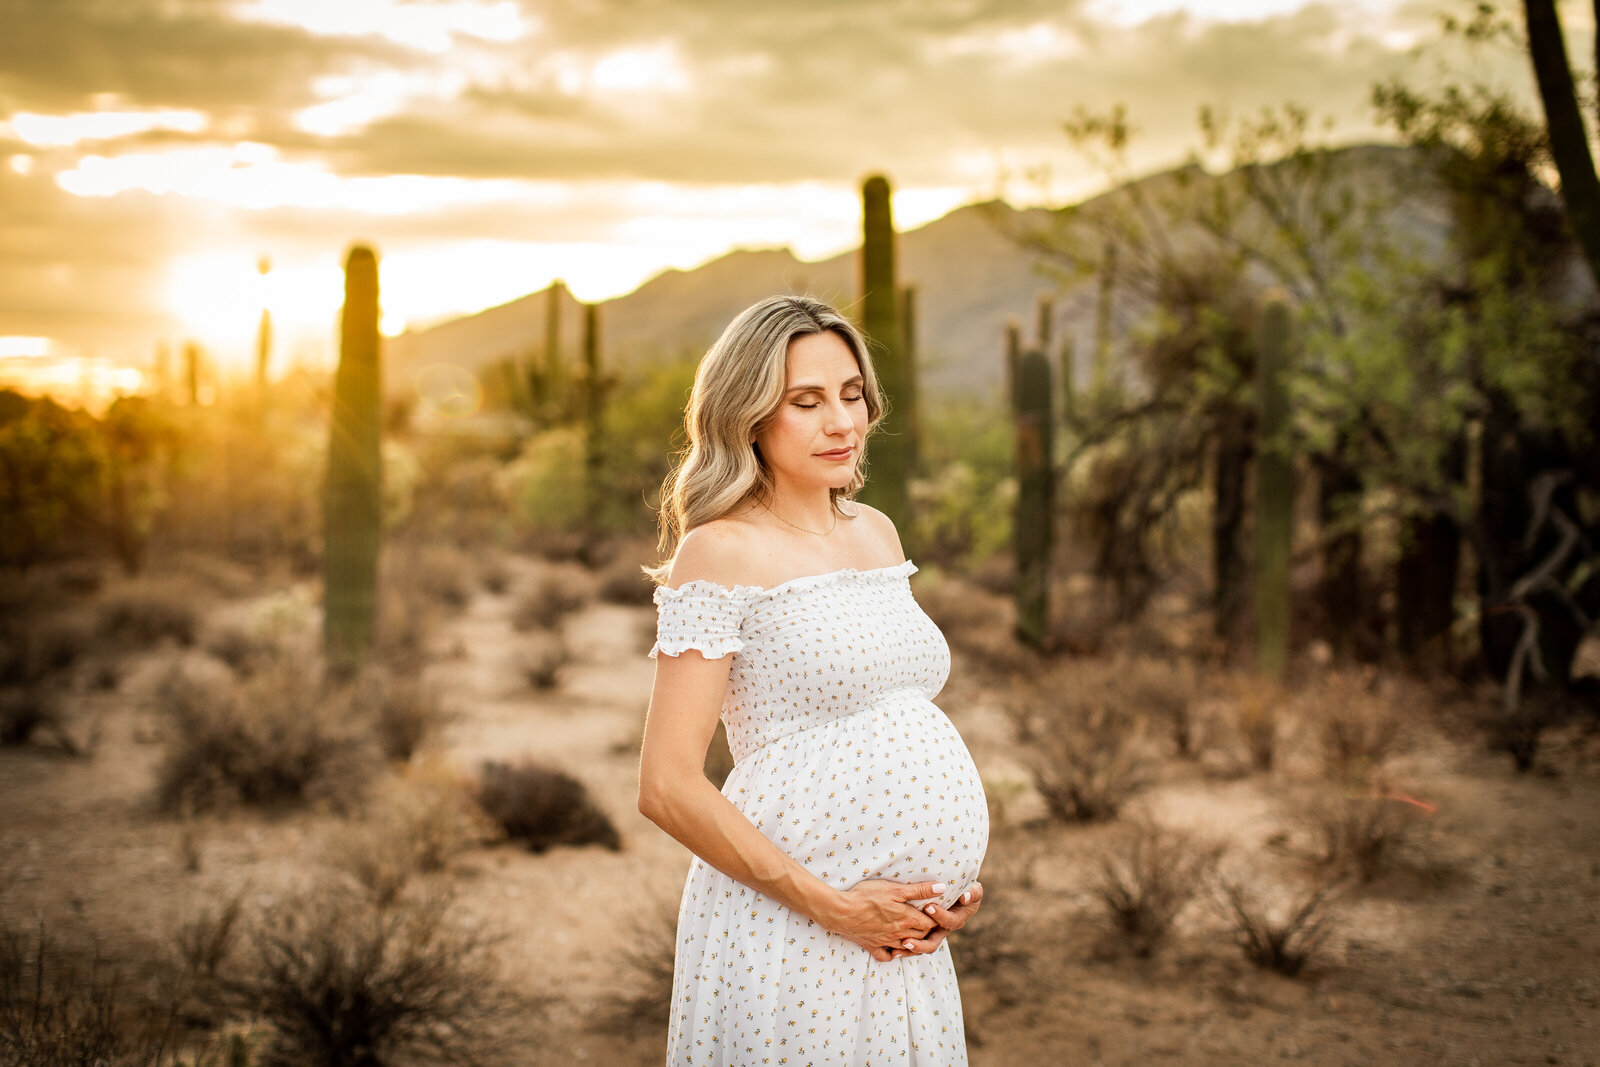 Tucson maternity photographer at Sabino Canyon photo shoot.